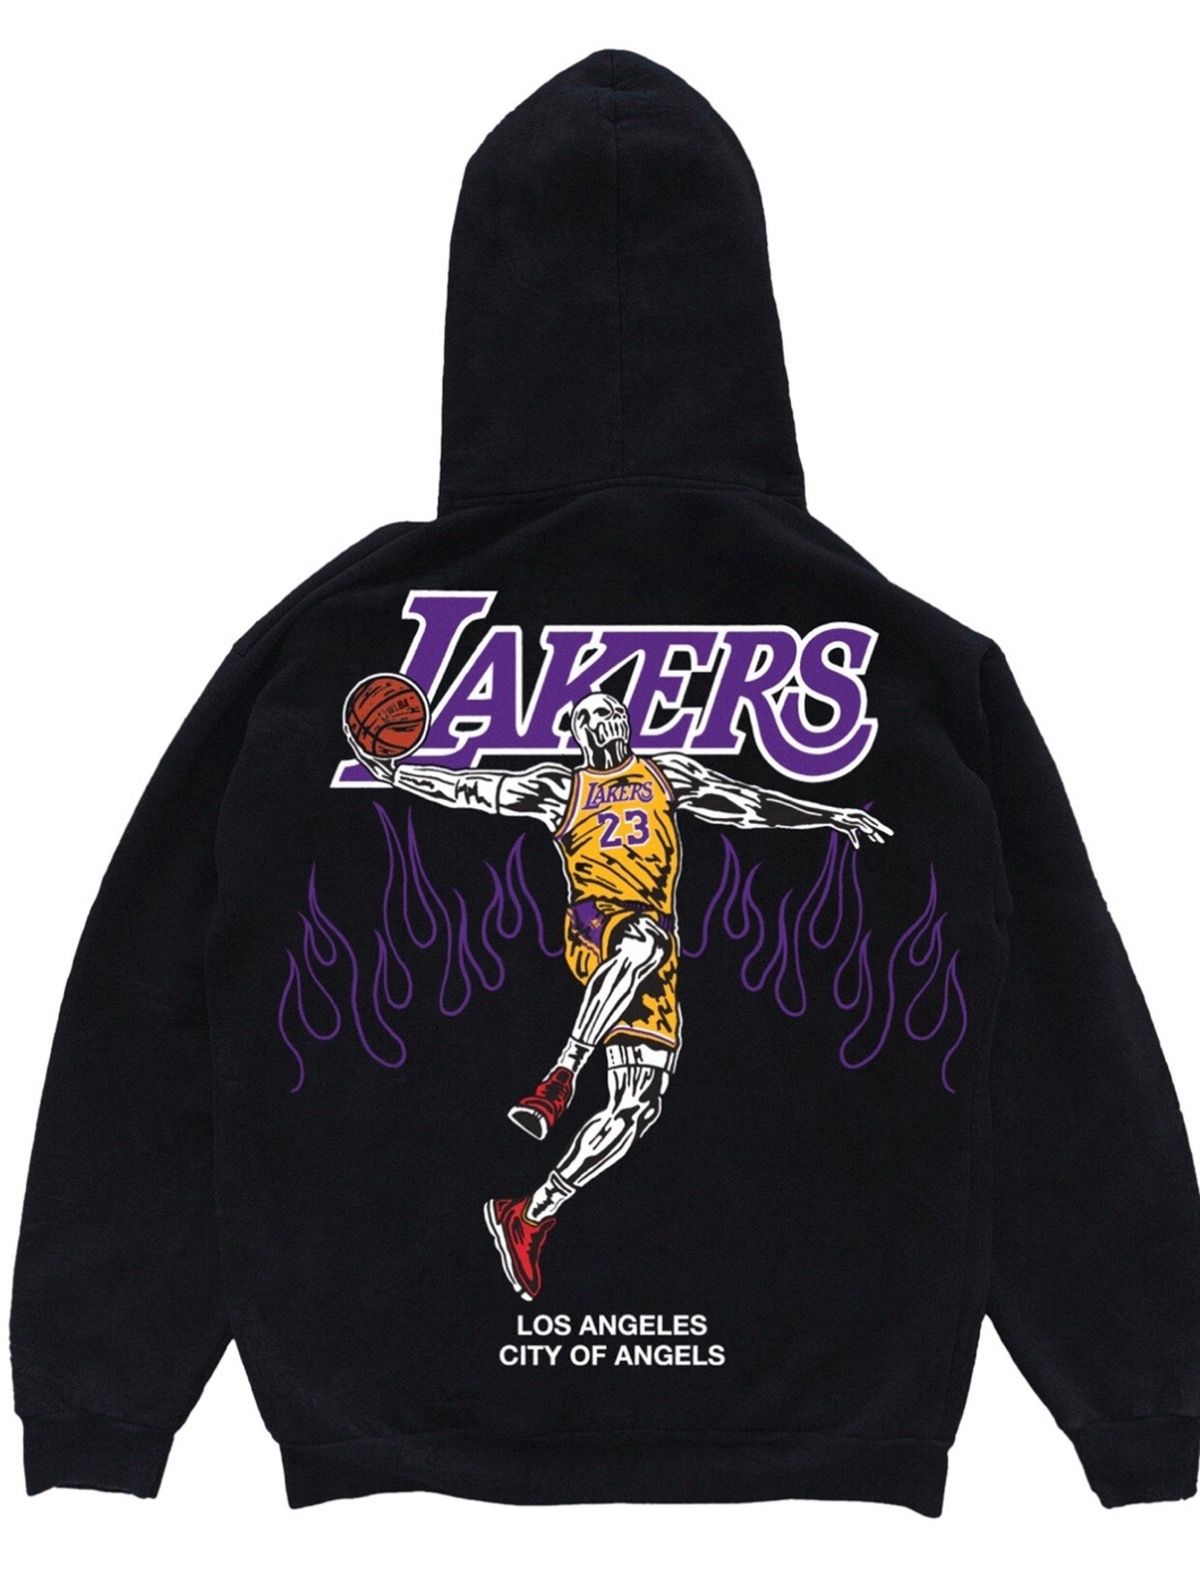 Skeleton cactus Los Angeles Lakers shirt, hoodie, sweater, long